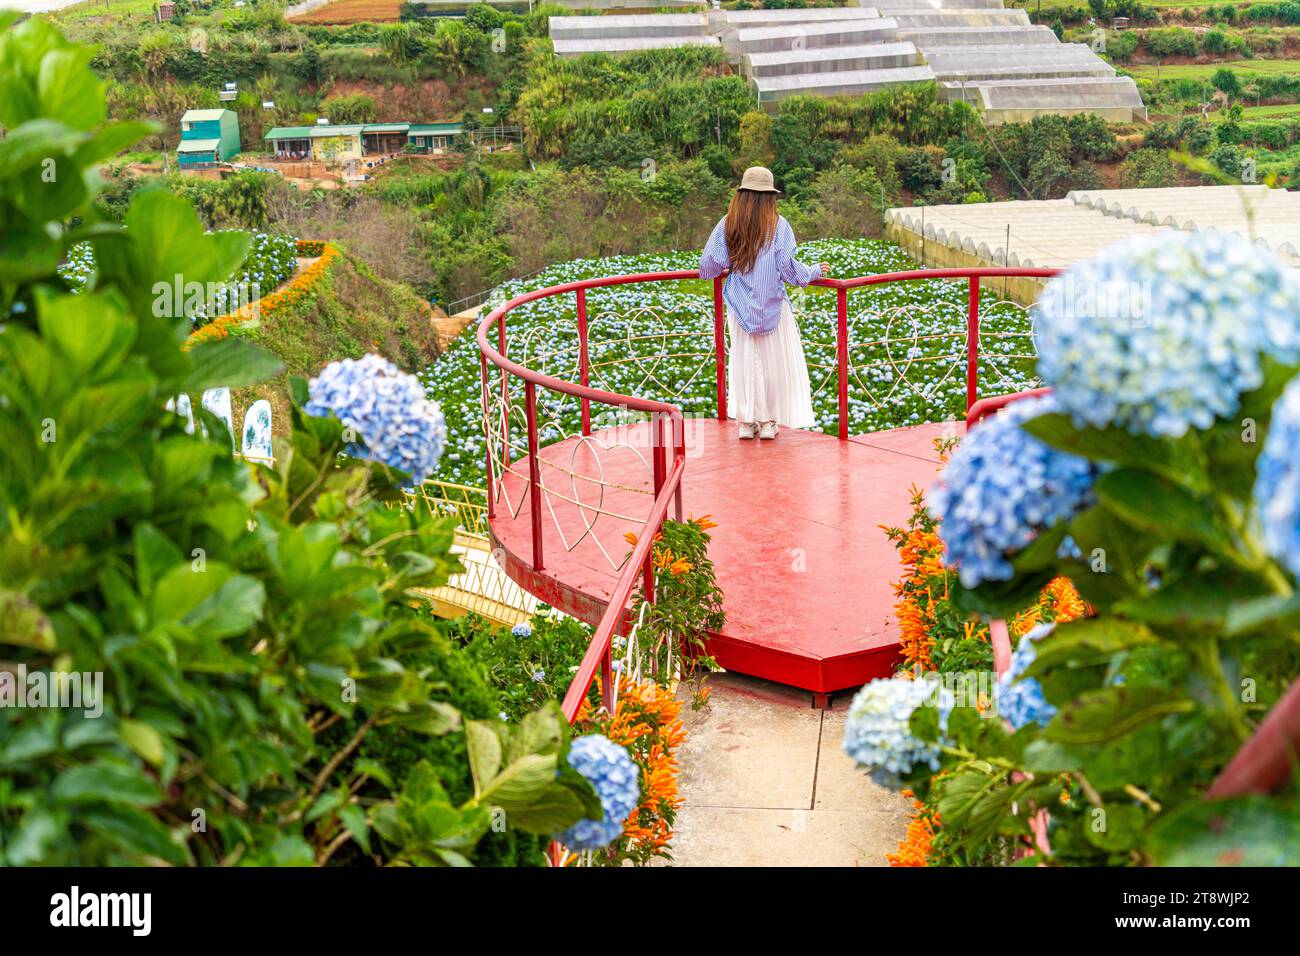 Junge Reisende, die mit blühenden Hortensien-Gärten in Dalat, Vietnam, genießt. Reise-Lifestyle-Konzept Stockfoto